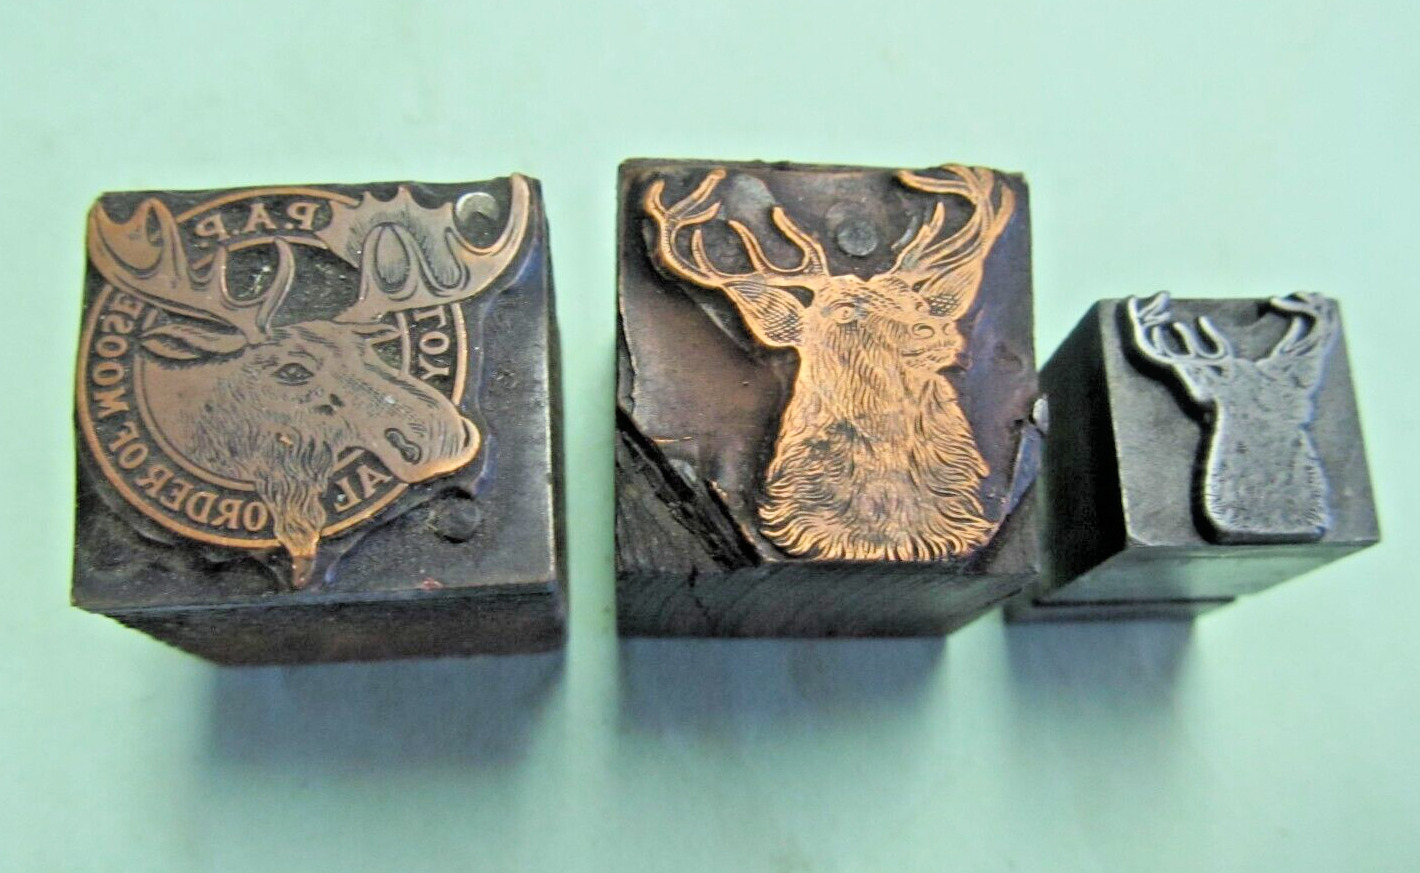 3 Loyal Order of Moose ~ Vintage Letterpress Printing Plate / Print Block